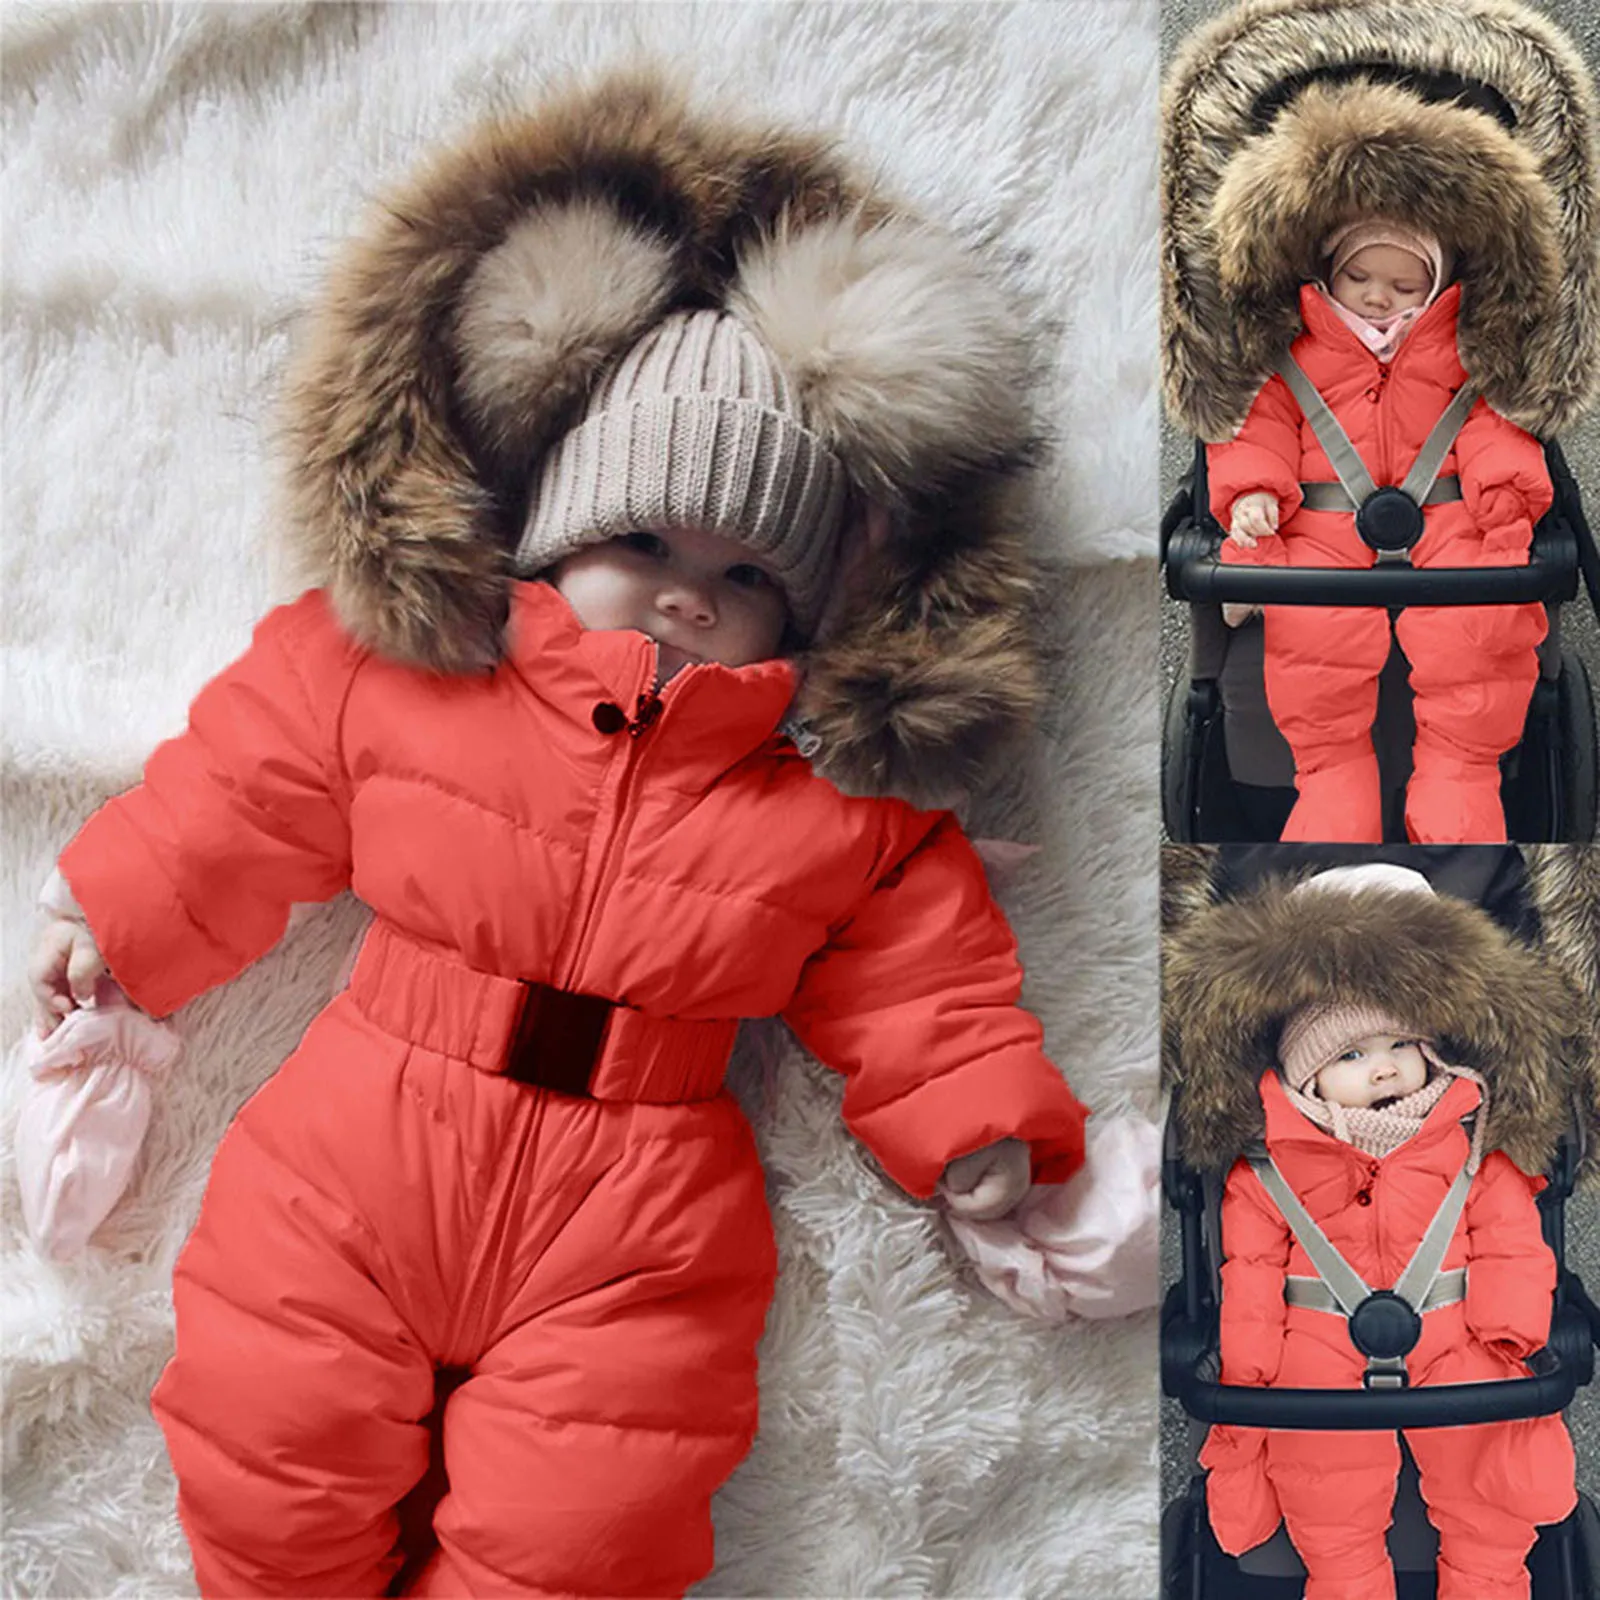 Newborn Baby Kids Girls Boys Winter Warm Outerwear Jacket Children Snowsuit Coat 